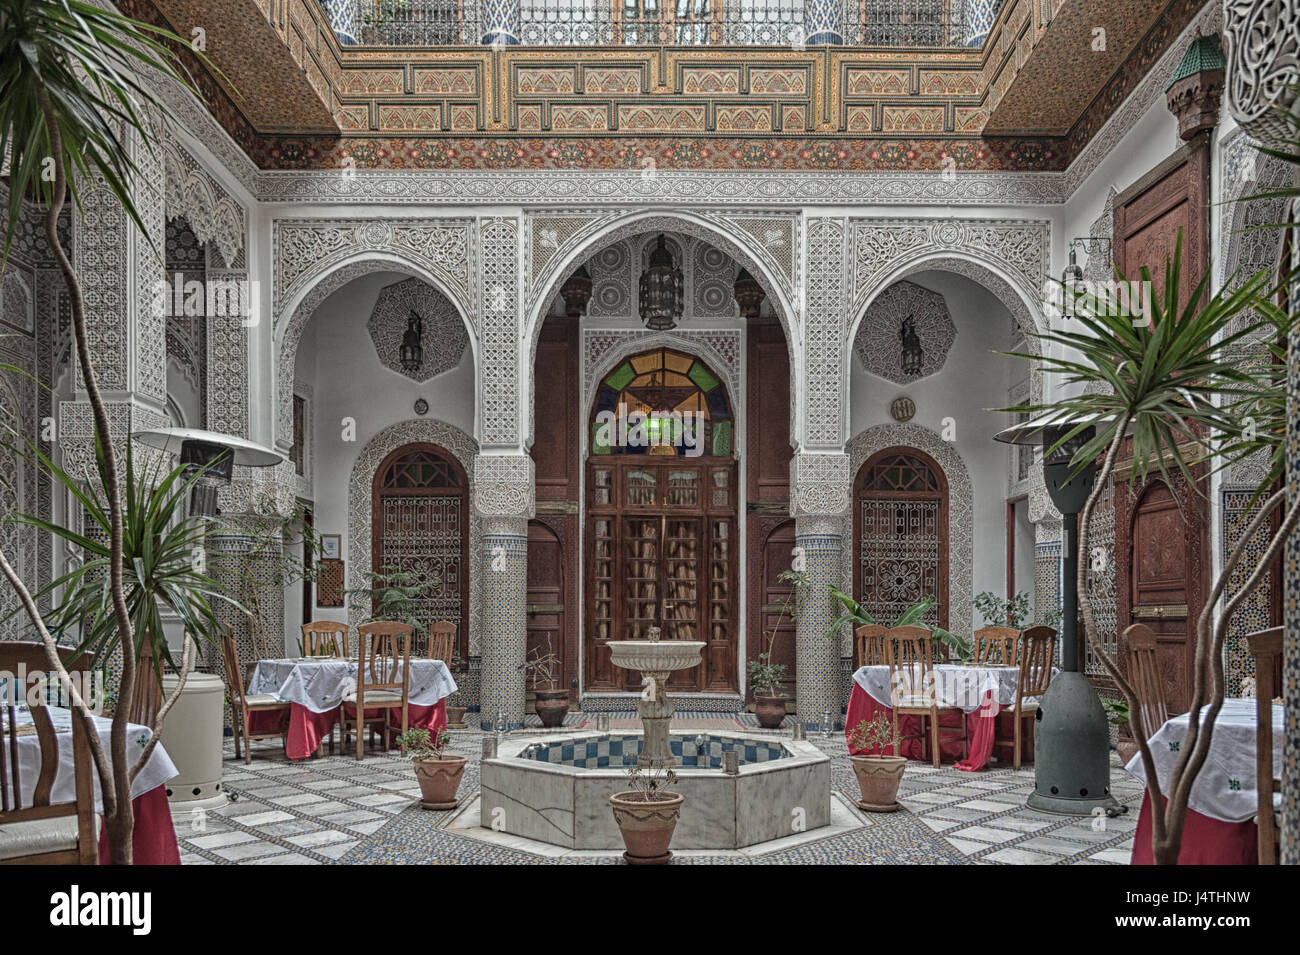 Fes, MAROC - février 19, 2017 : l'intérieur d'un petit hôtel familial dans la médina de Fes. La médina est inscrite au Patrimoine Mondial de l'UNESCO Banque D'Images